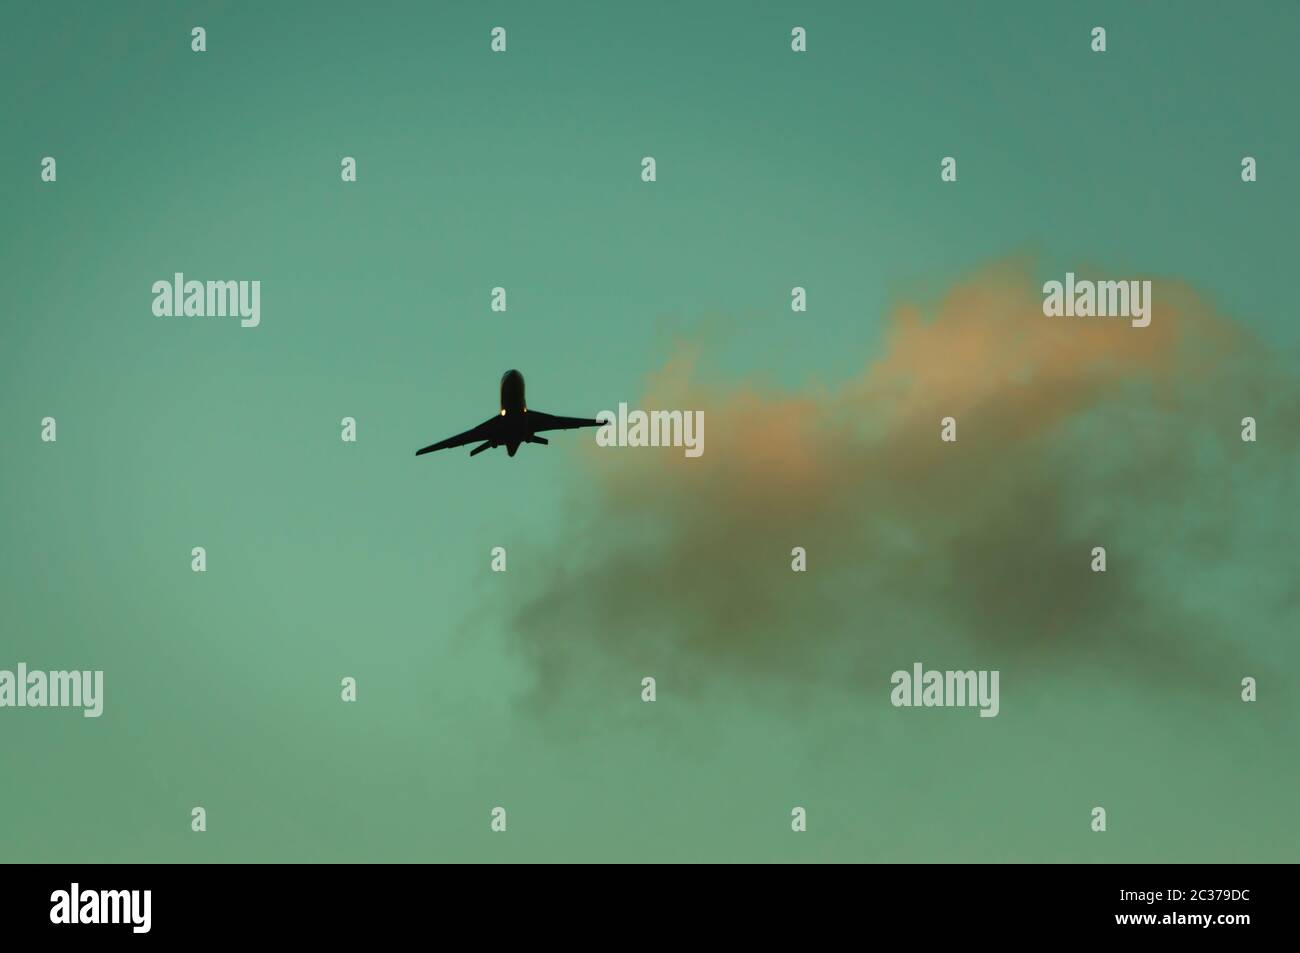 Passenger jet in sky at dusk. Stock Photo